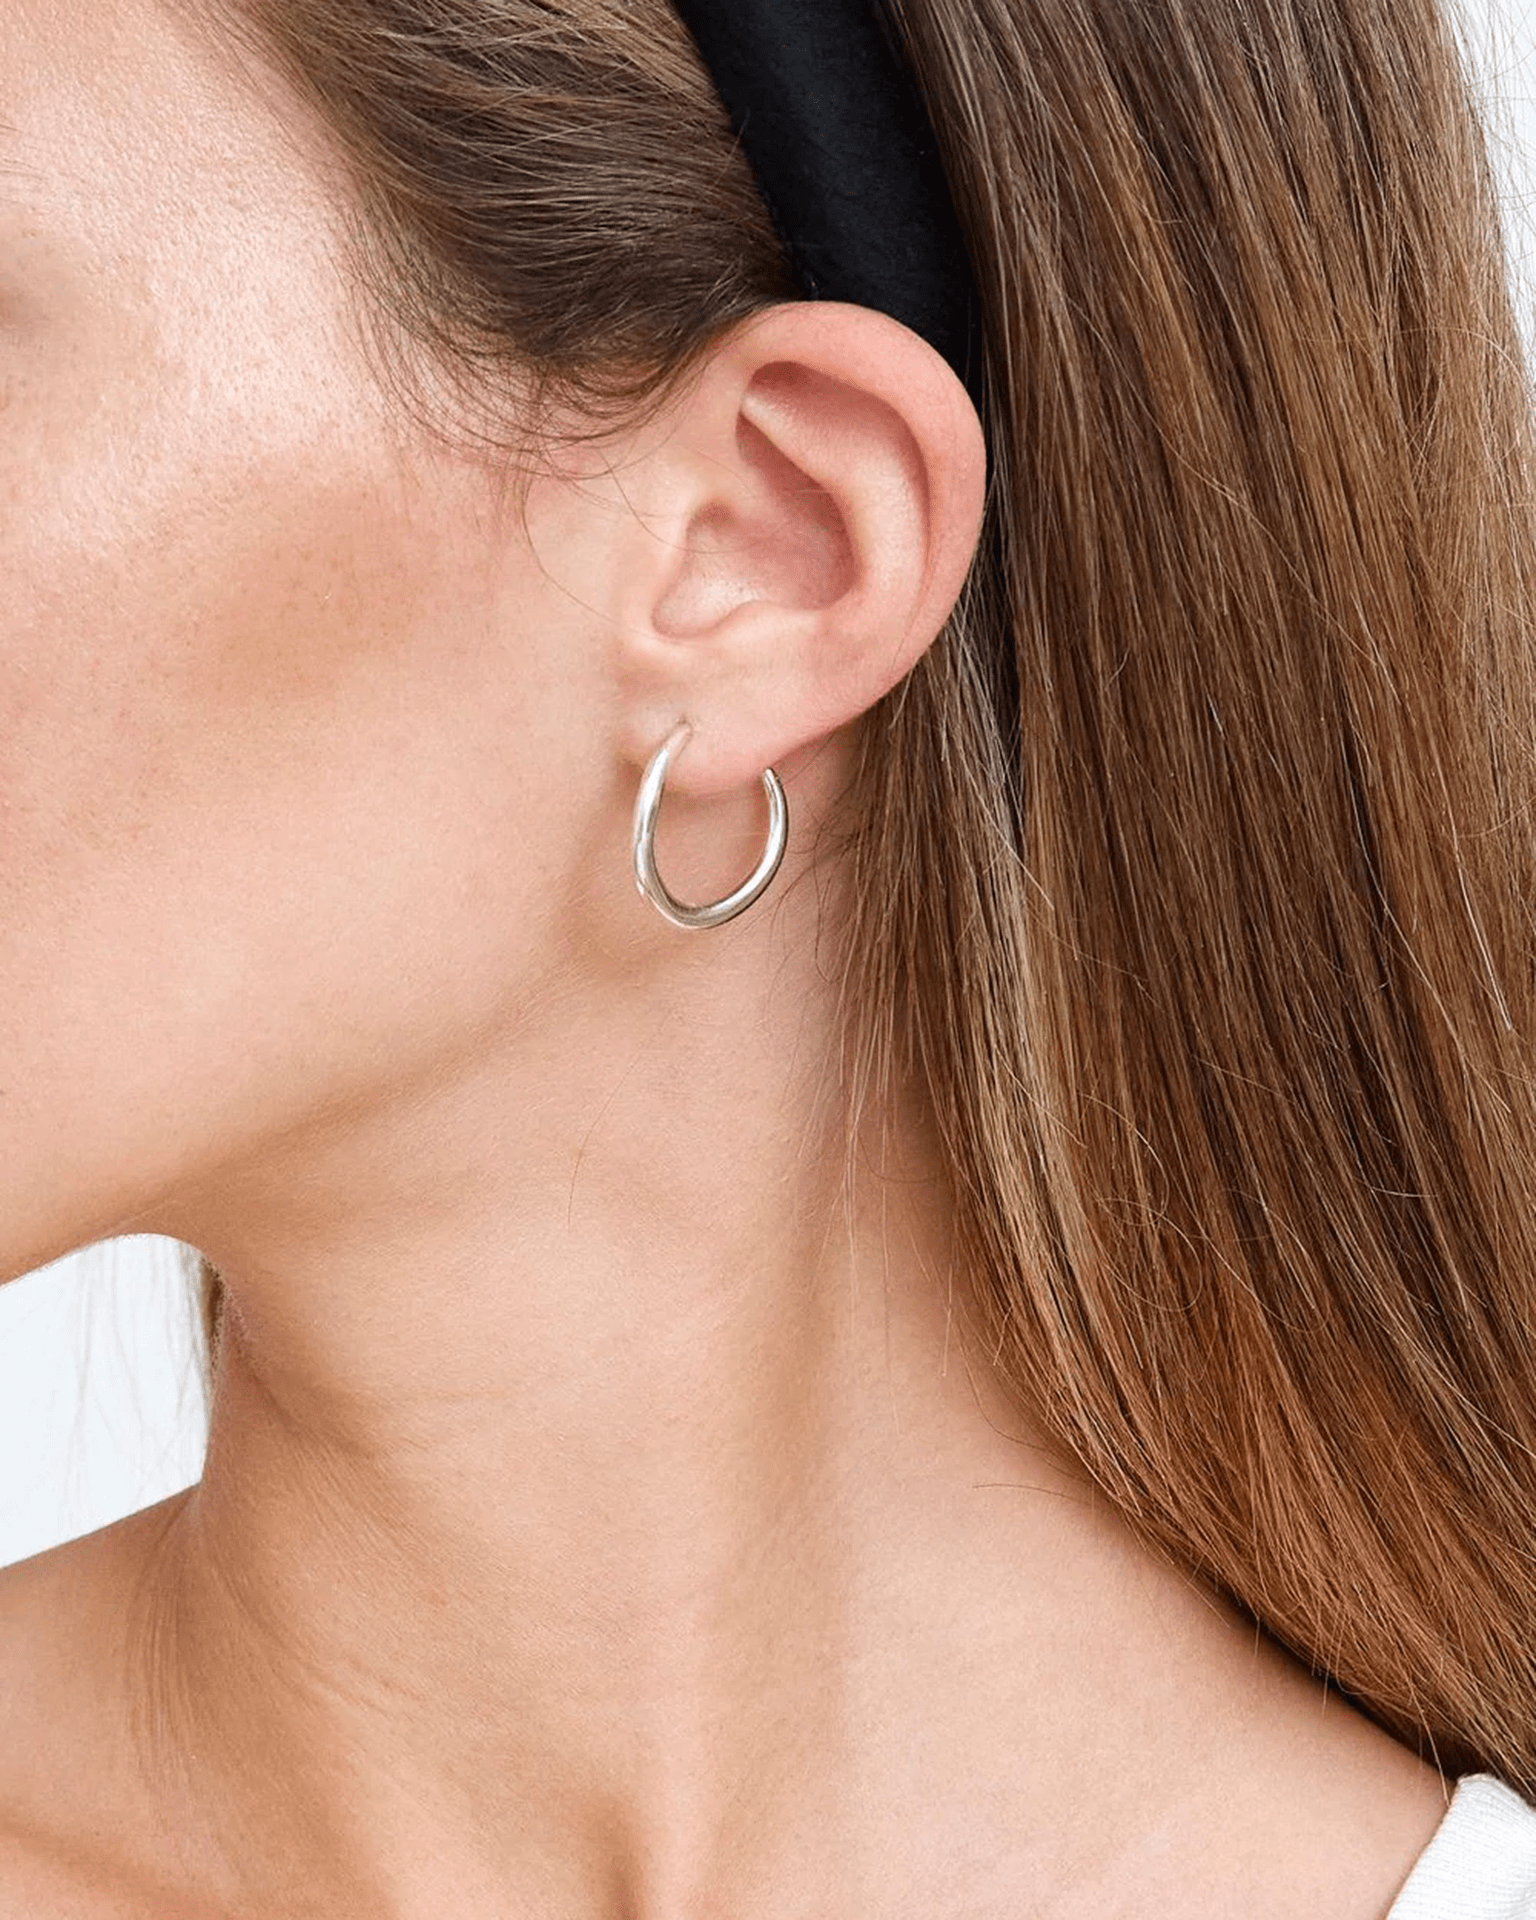 Women's Small Sterling Silver Hoop Earrings